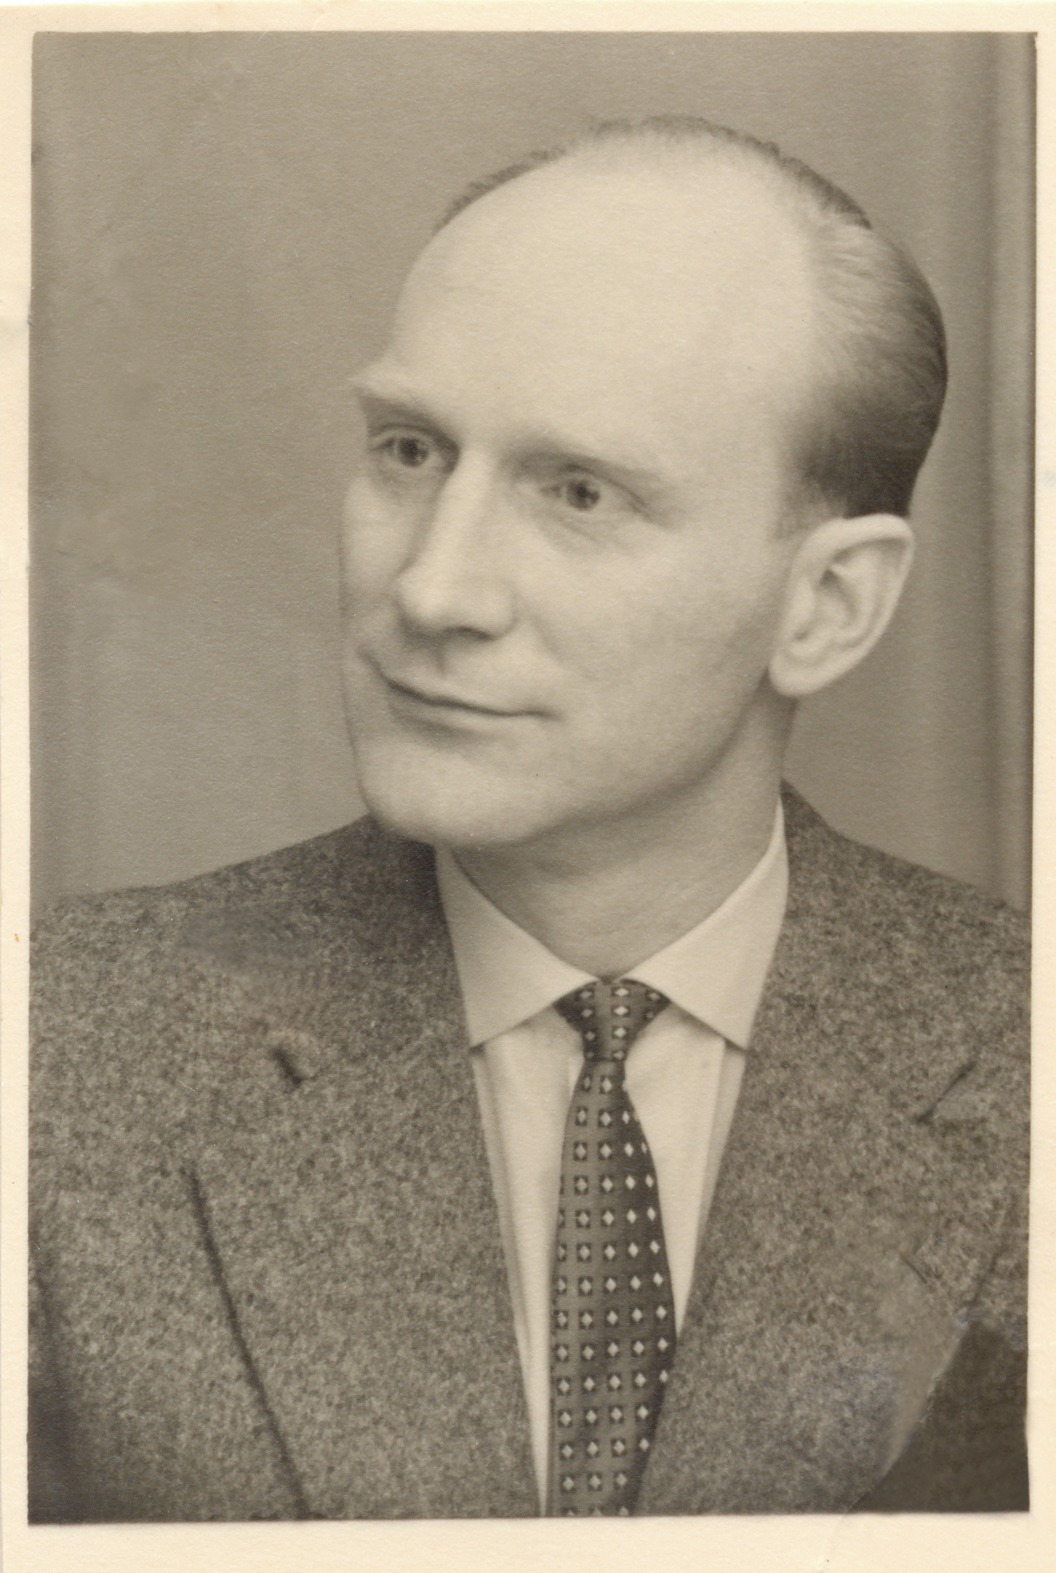 Helmut Heinrich Georg Gremmel (Bild)